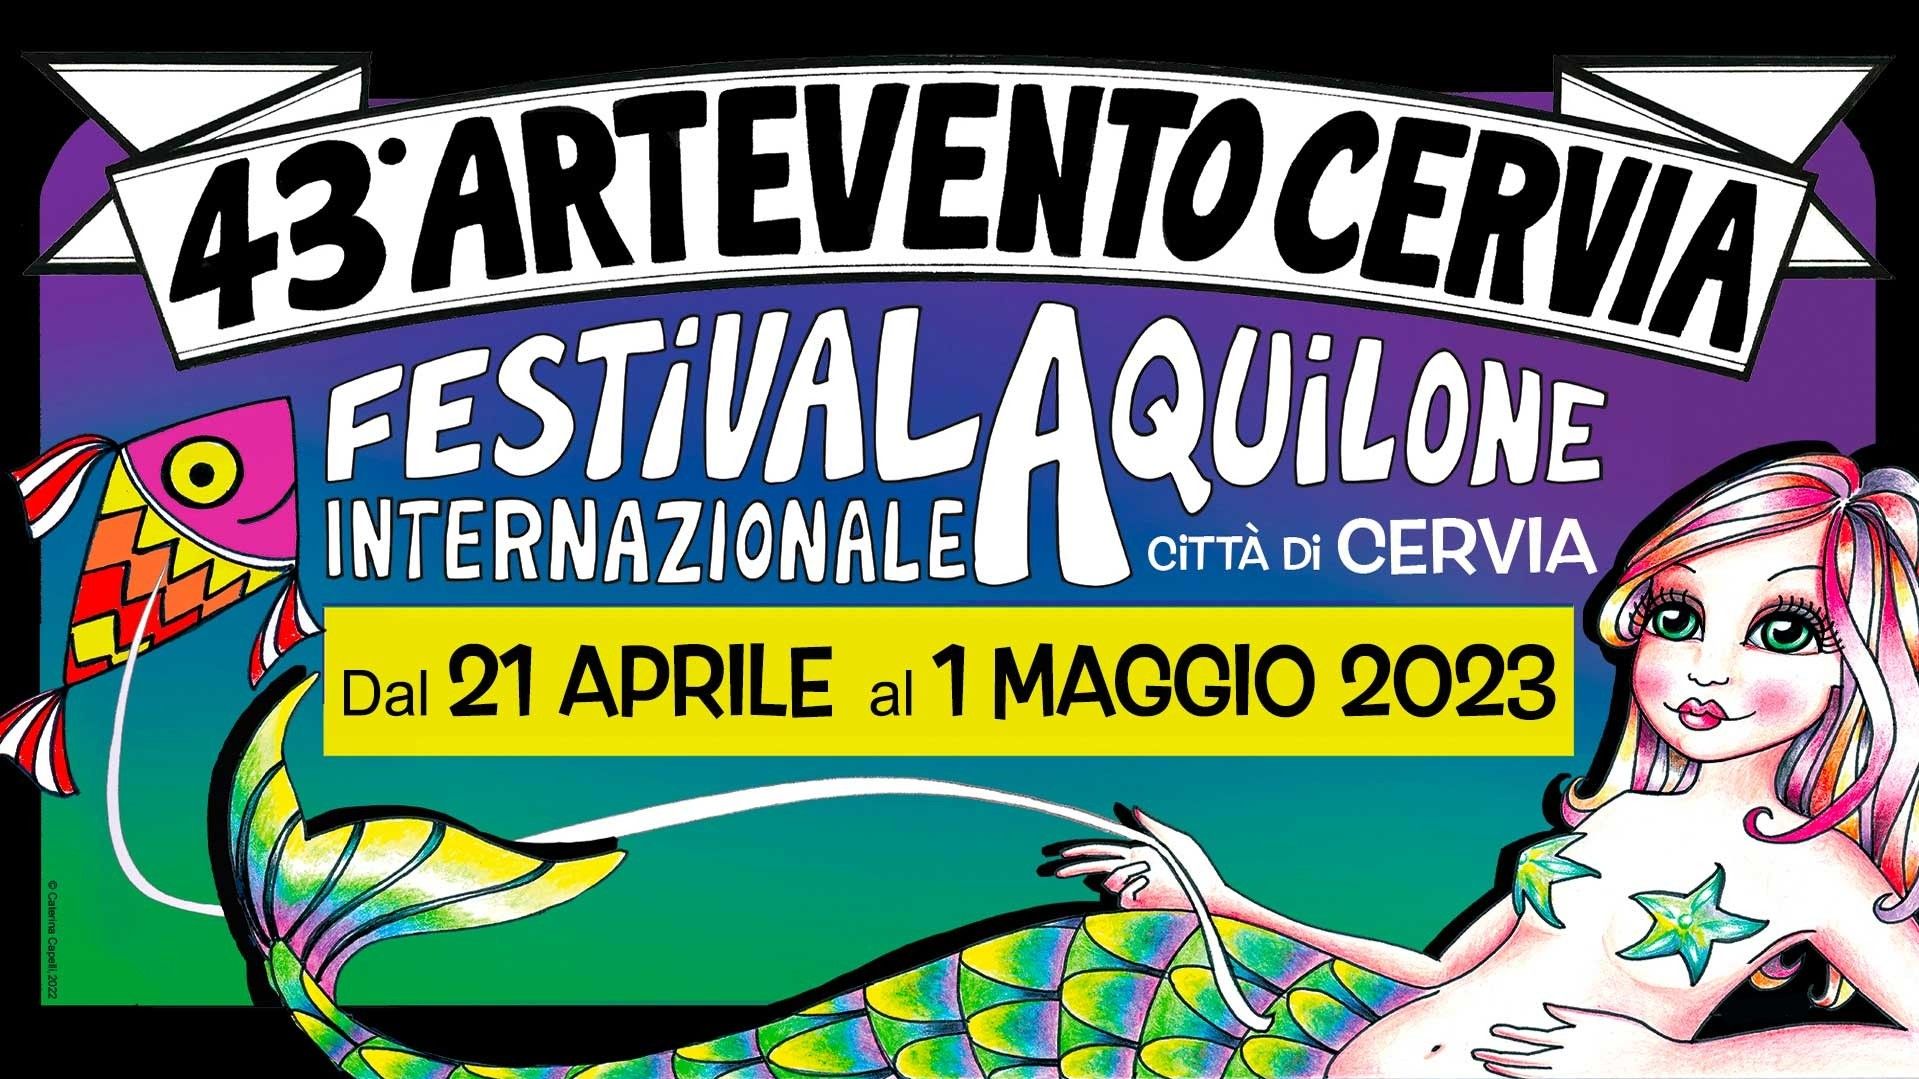 43° Festival Internazionale dell'Aquilone